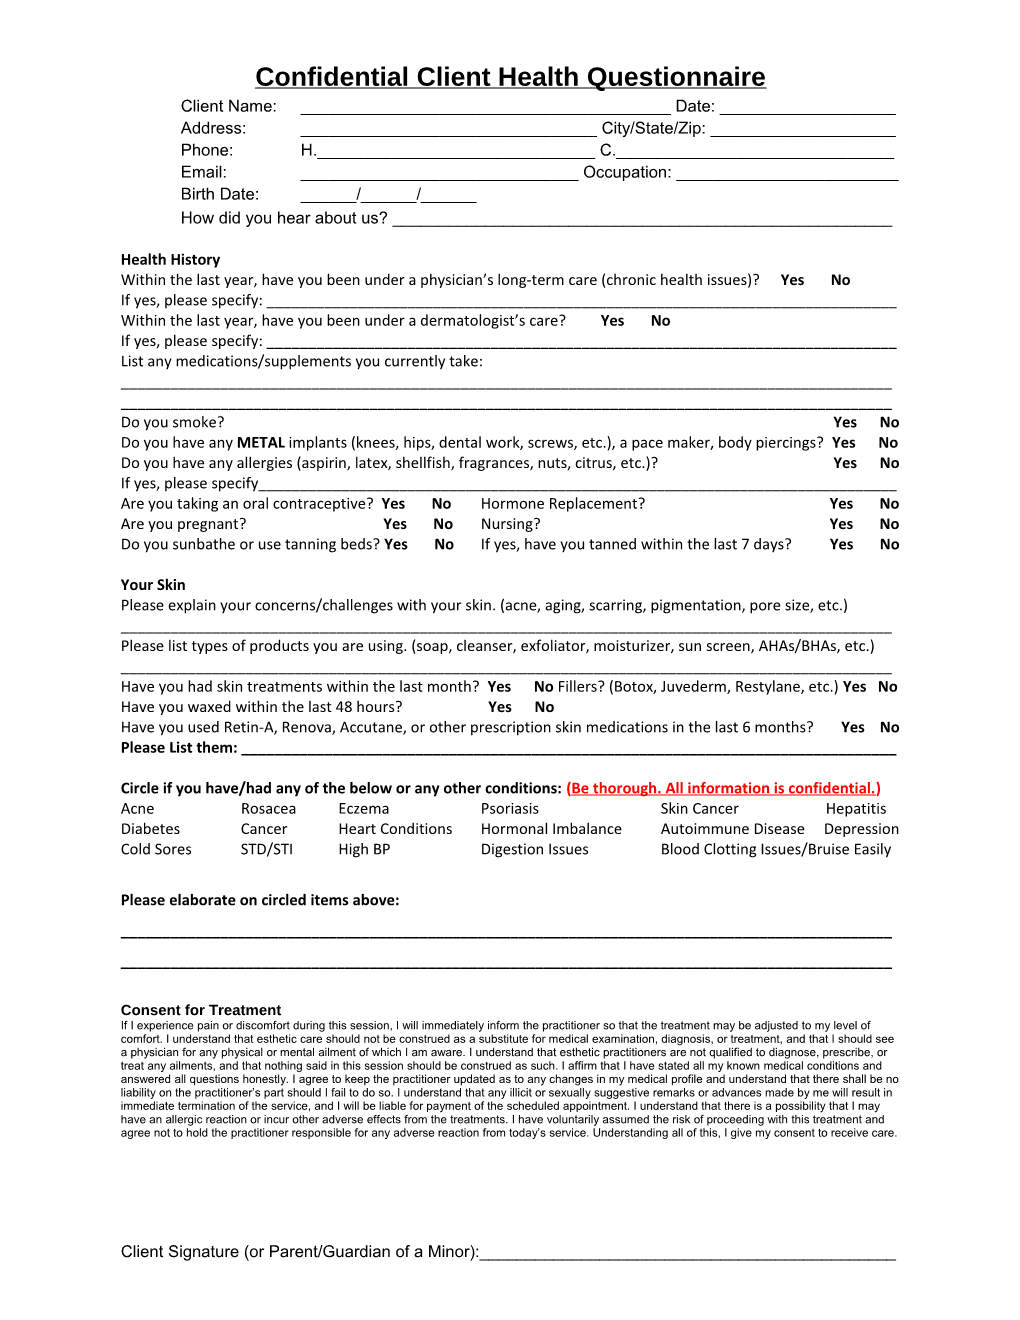 Confidential Client Health Questionnaire